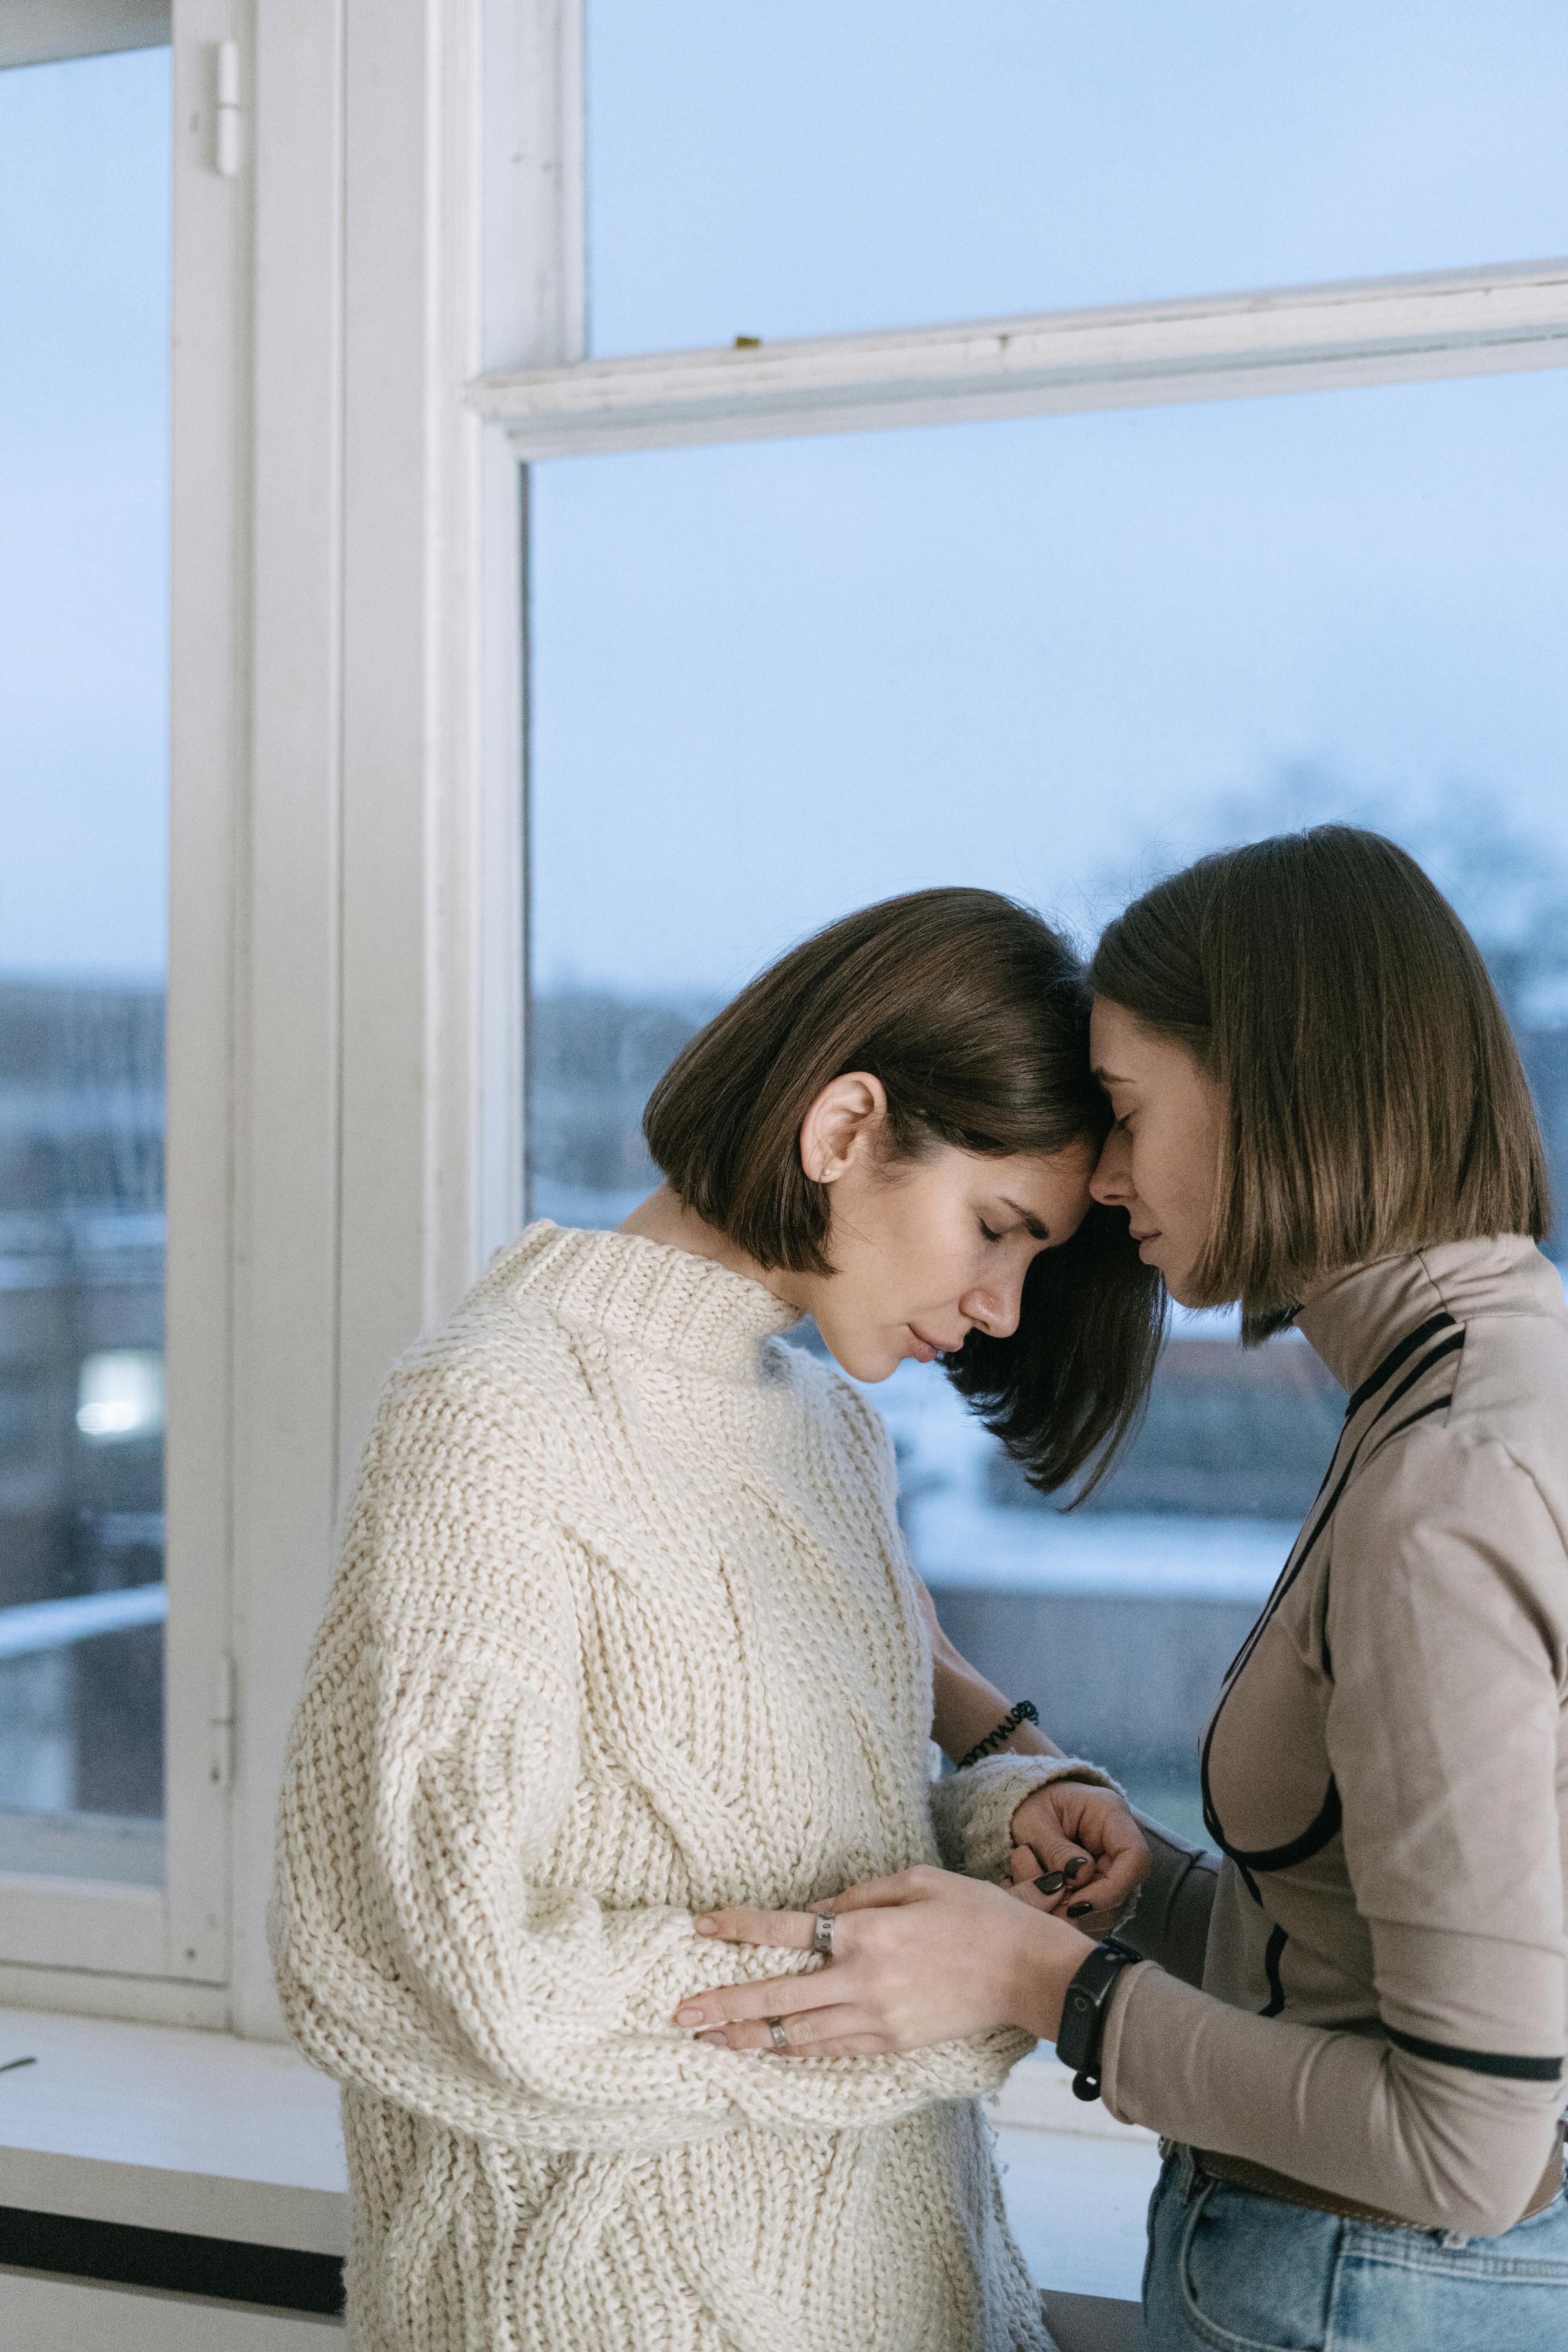 Deux femmes émues partageant un moment touchant | Source : Pexels